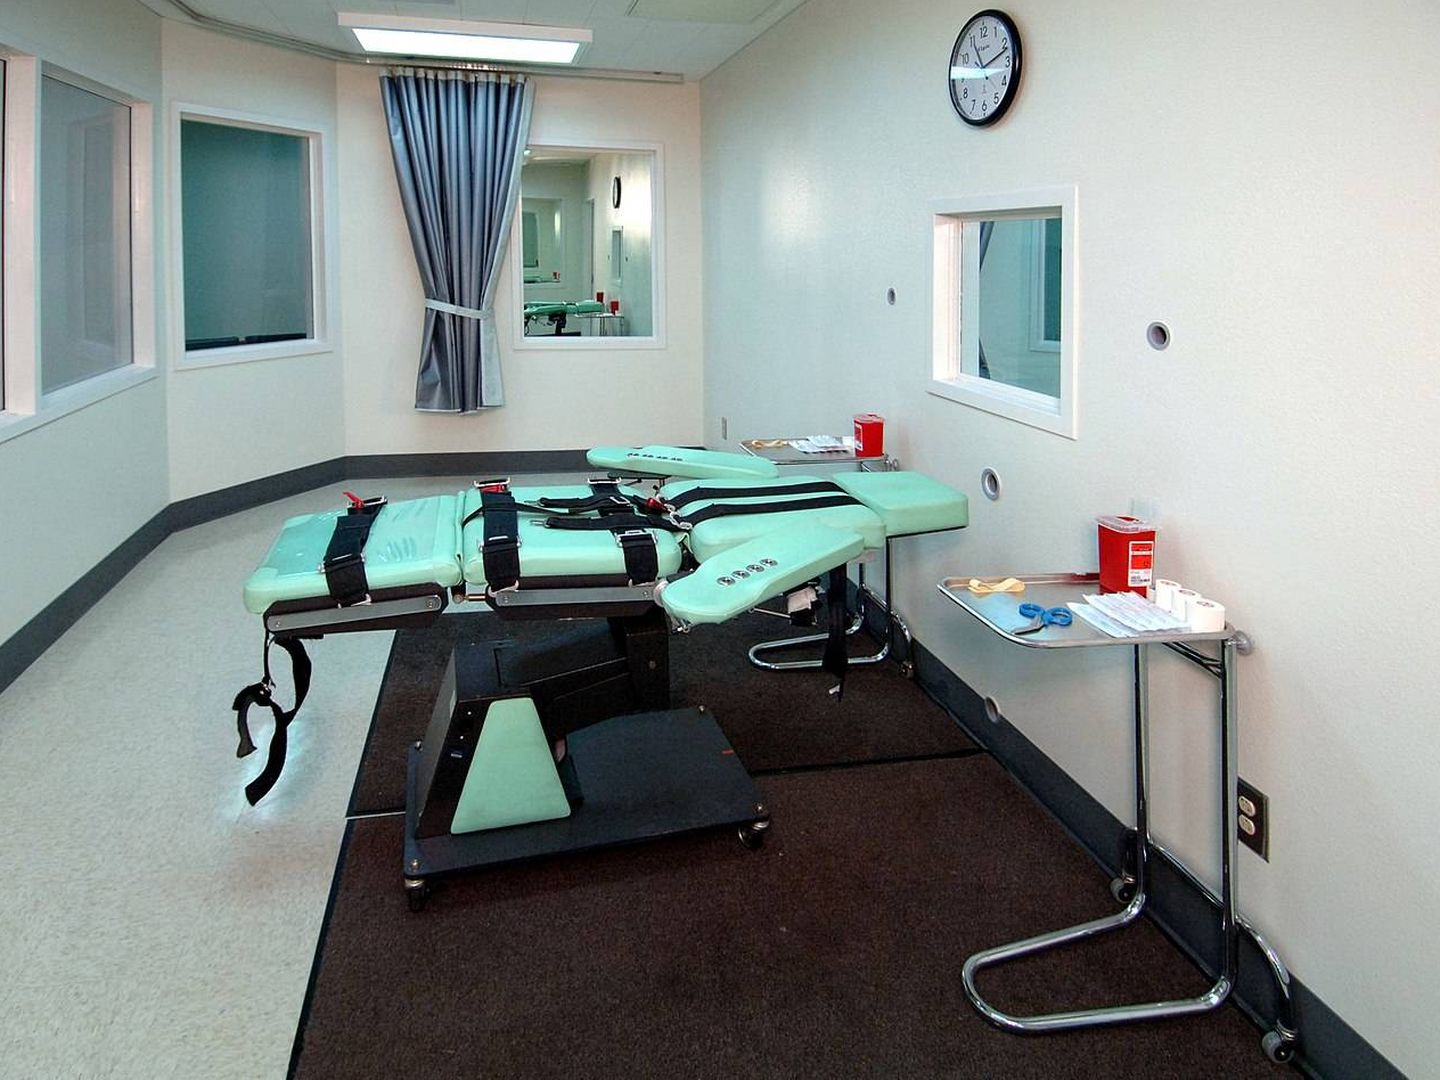 Sala destinada a la ejecución por inyección letal. Foto: CC